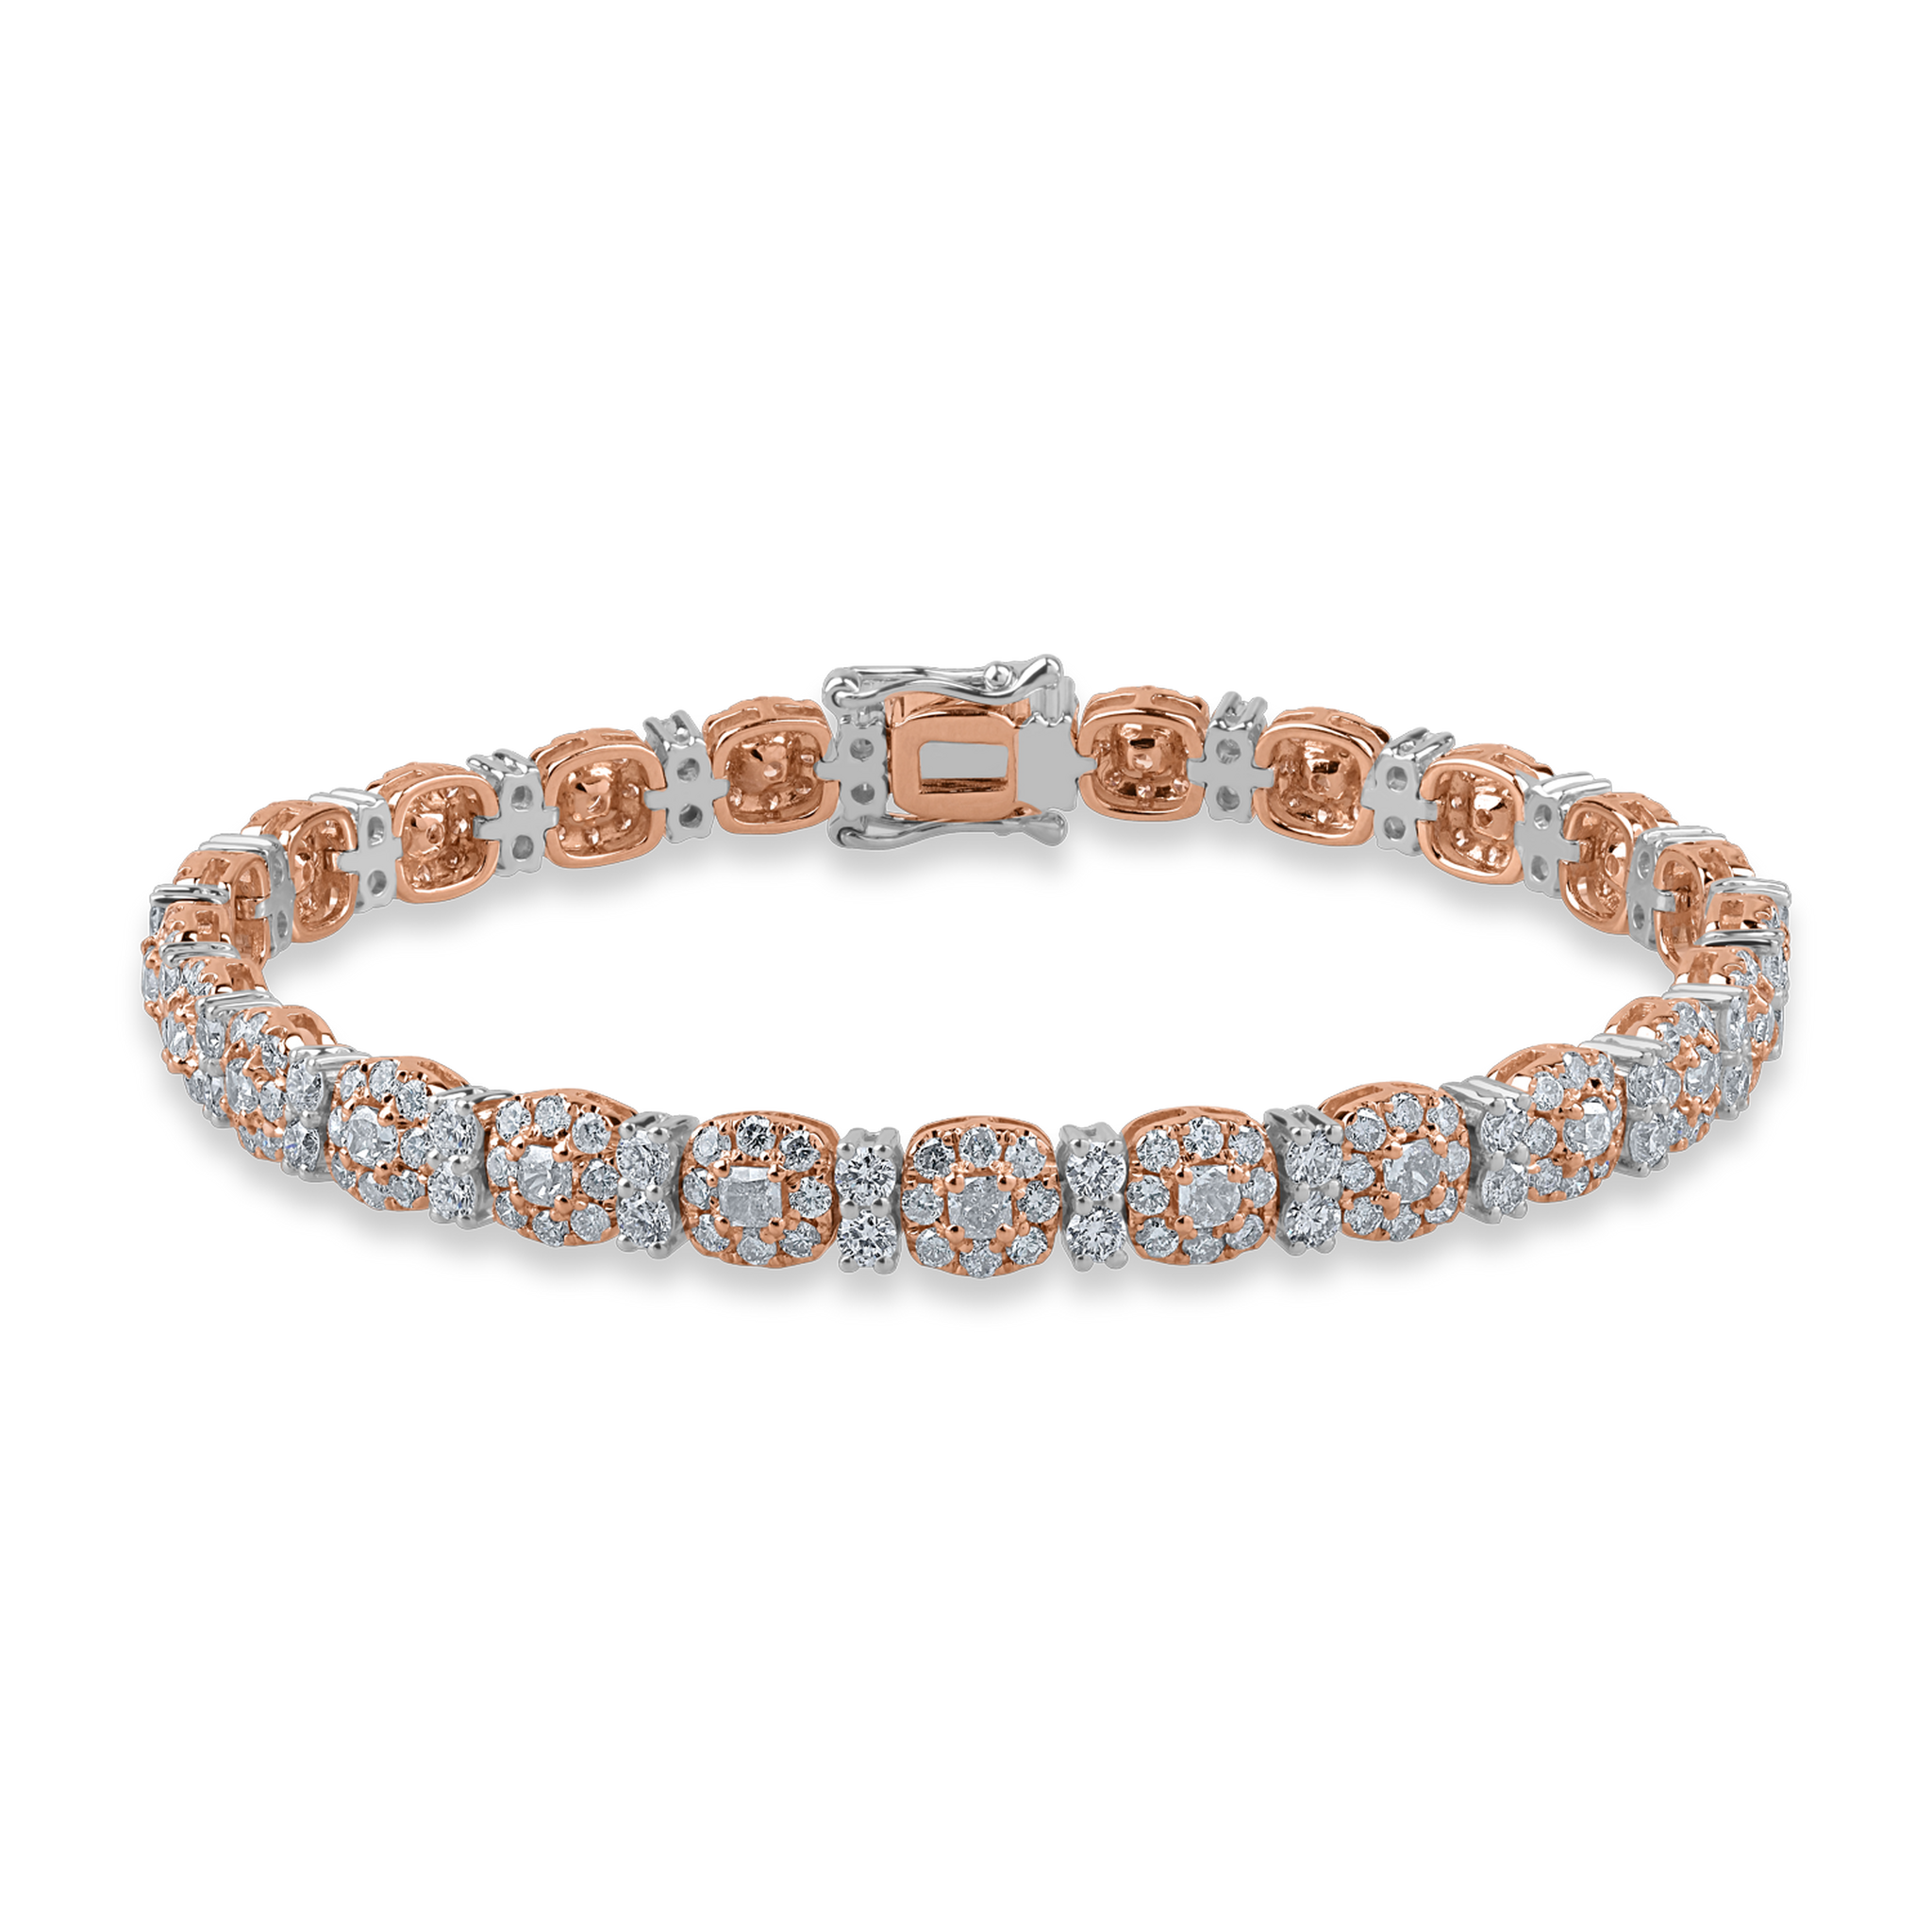 Bransoletka tenisowa z białego różowego złota z różowymi diamentami o masie 3.57ct i przezroczystymi diamentami o masie 1.66ct